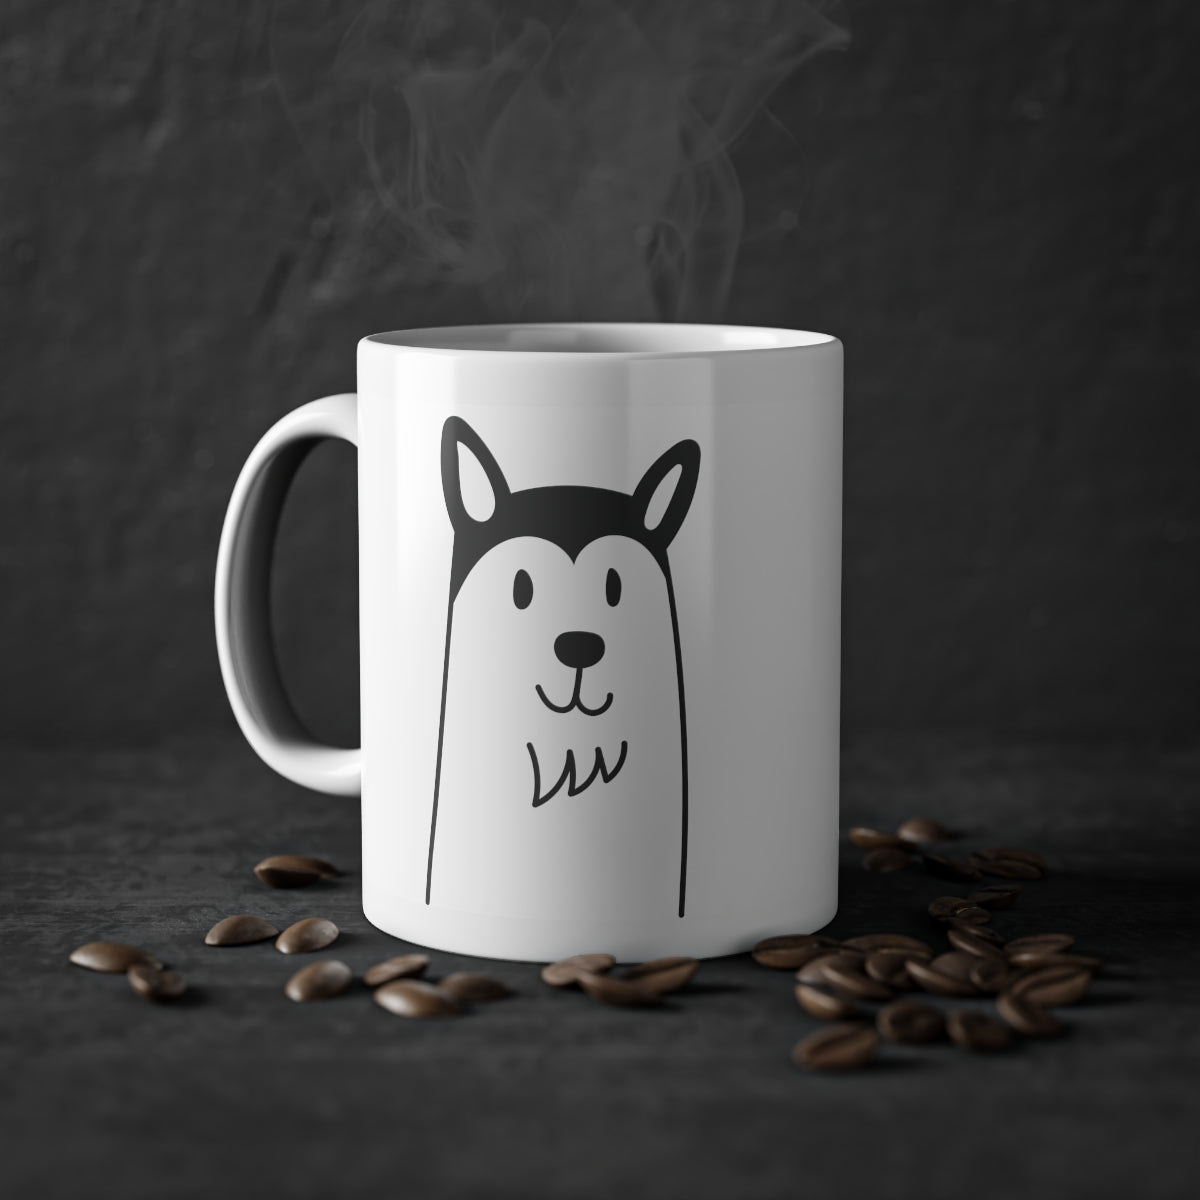 Niedlicher Hund Husky Becher, weiß, 325 ml / 11 oz Kaffeebecher, Teebecher für Kinder, Kinder, Welpenbecher für Hundeliebhaber, Hundebesitzer